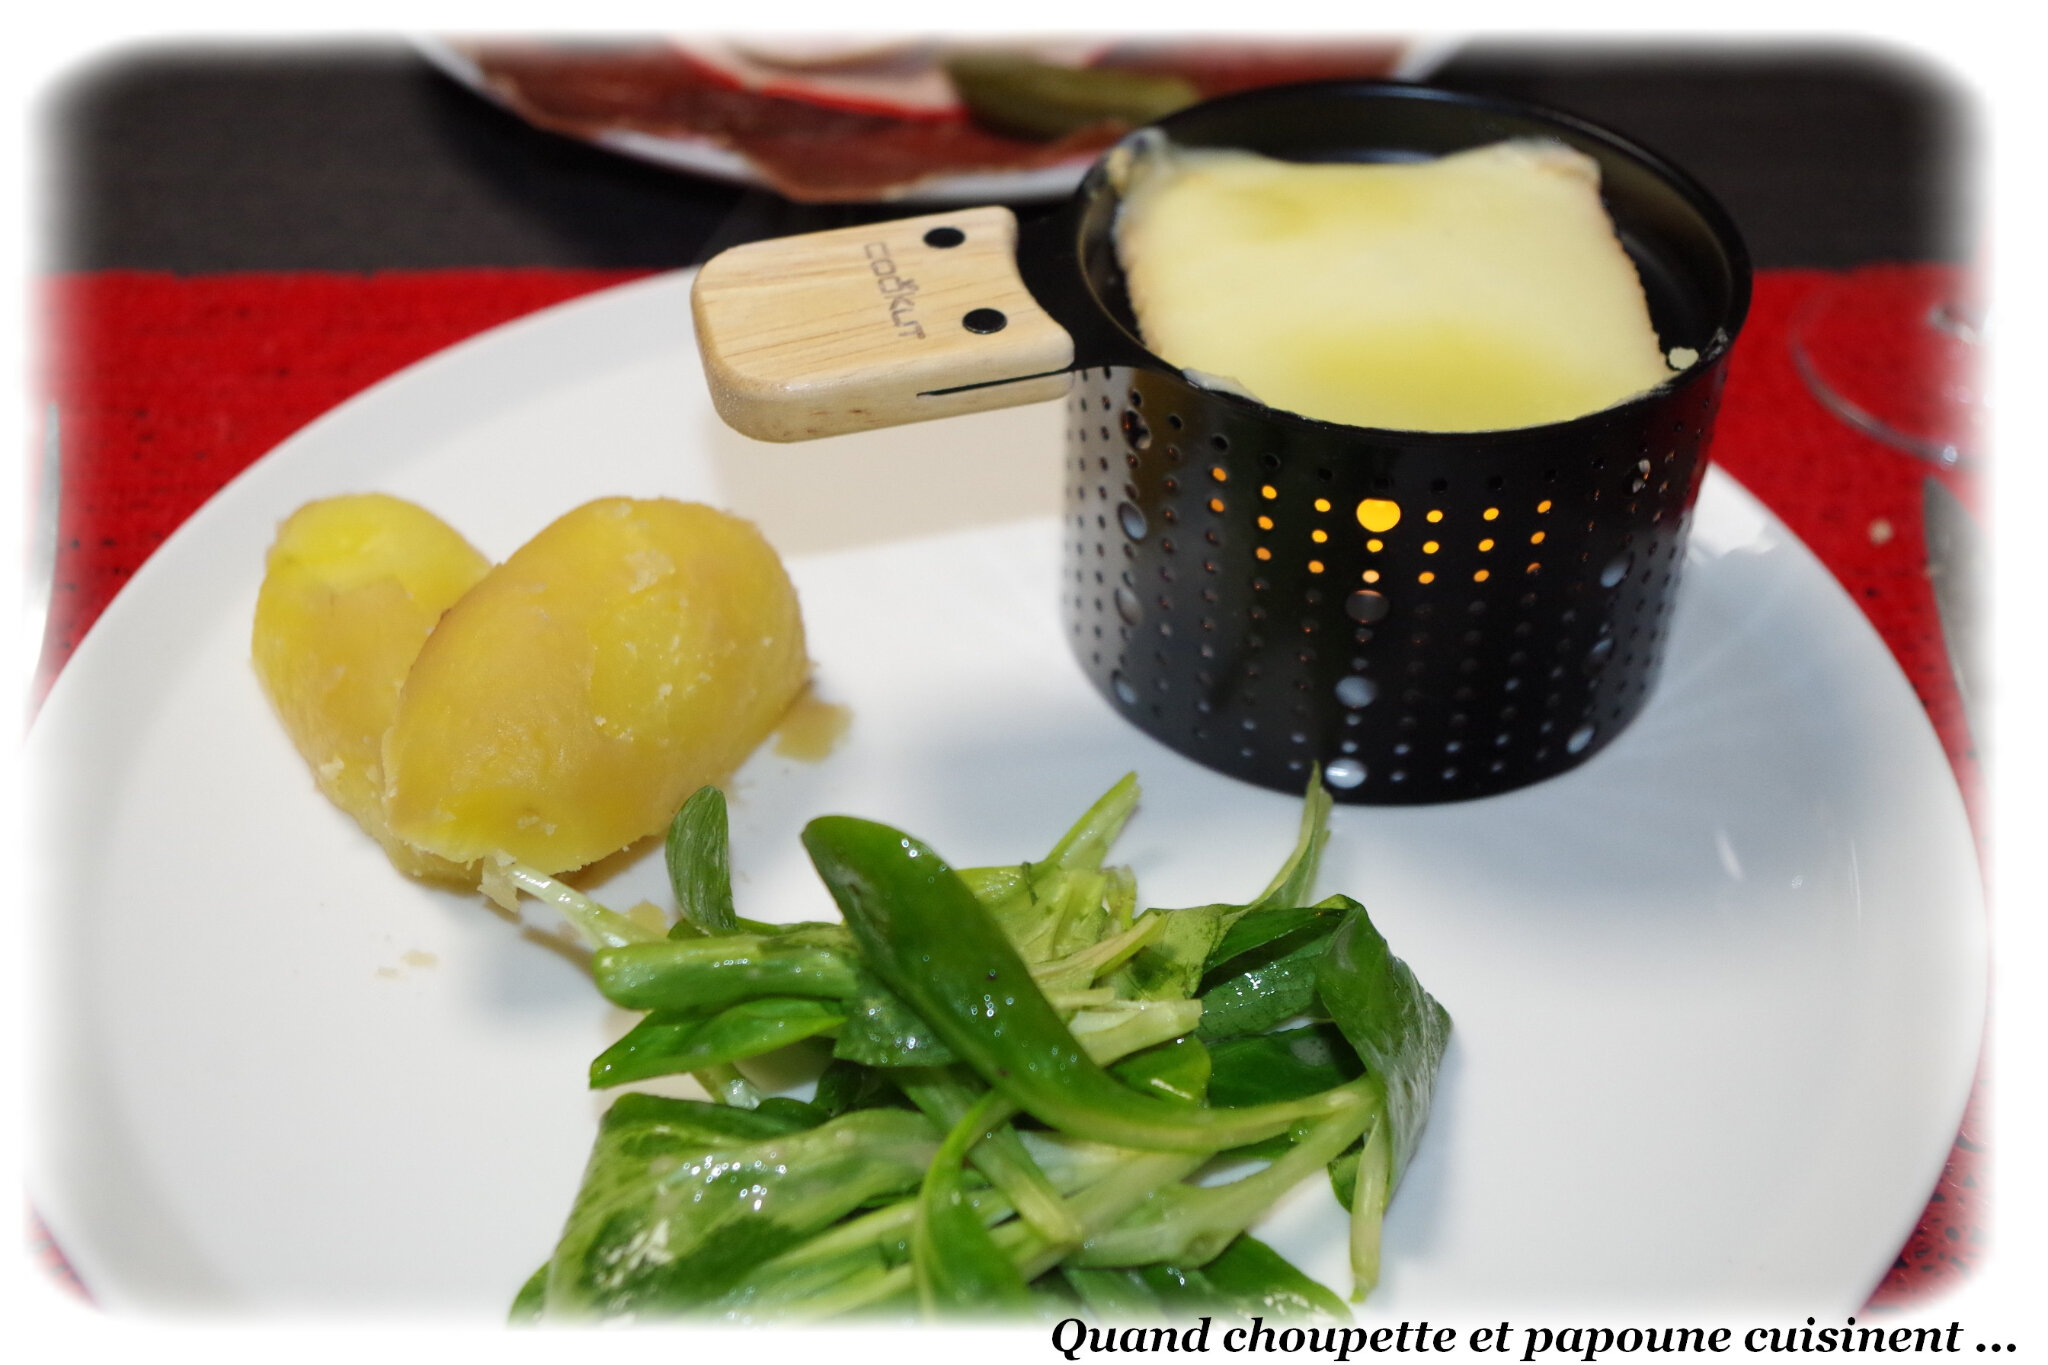 RACLETTE A LA BOUGIE COOKUT - Quand Choupette et Papoune cuisinent